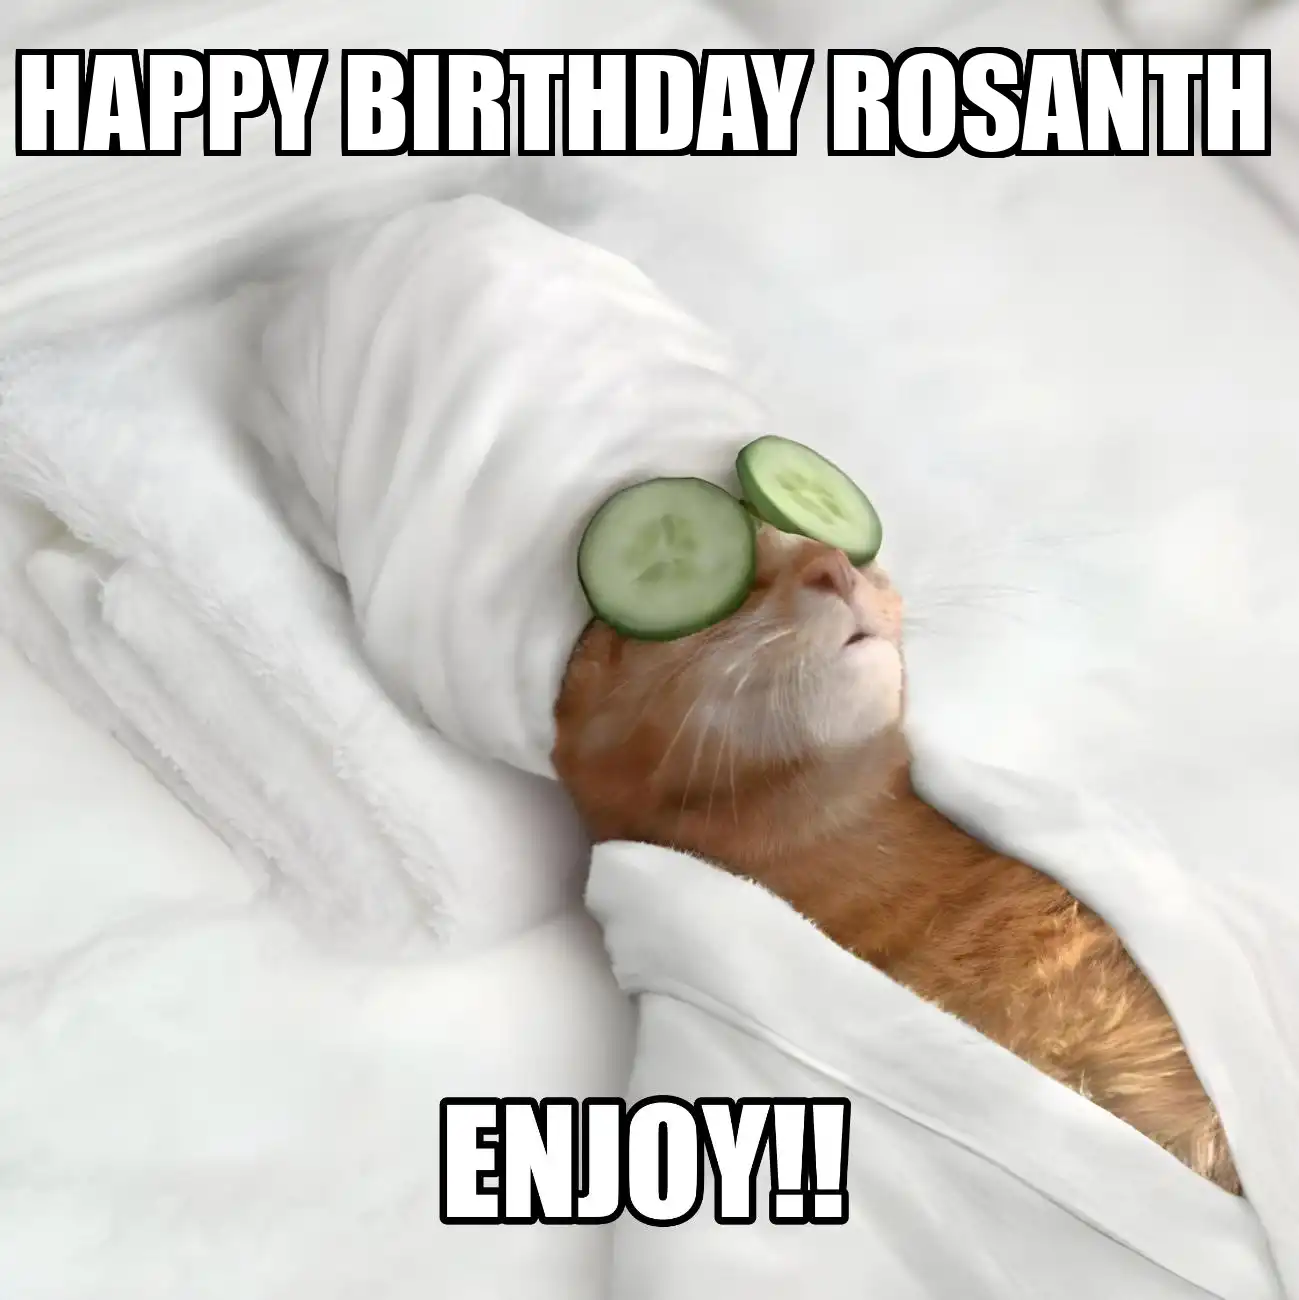 Happy Birthday Rosanth Enjoy Cat Meme